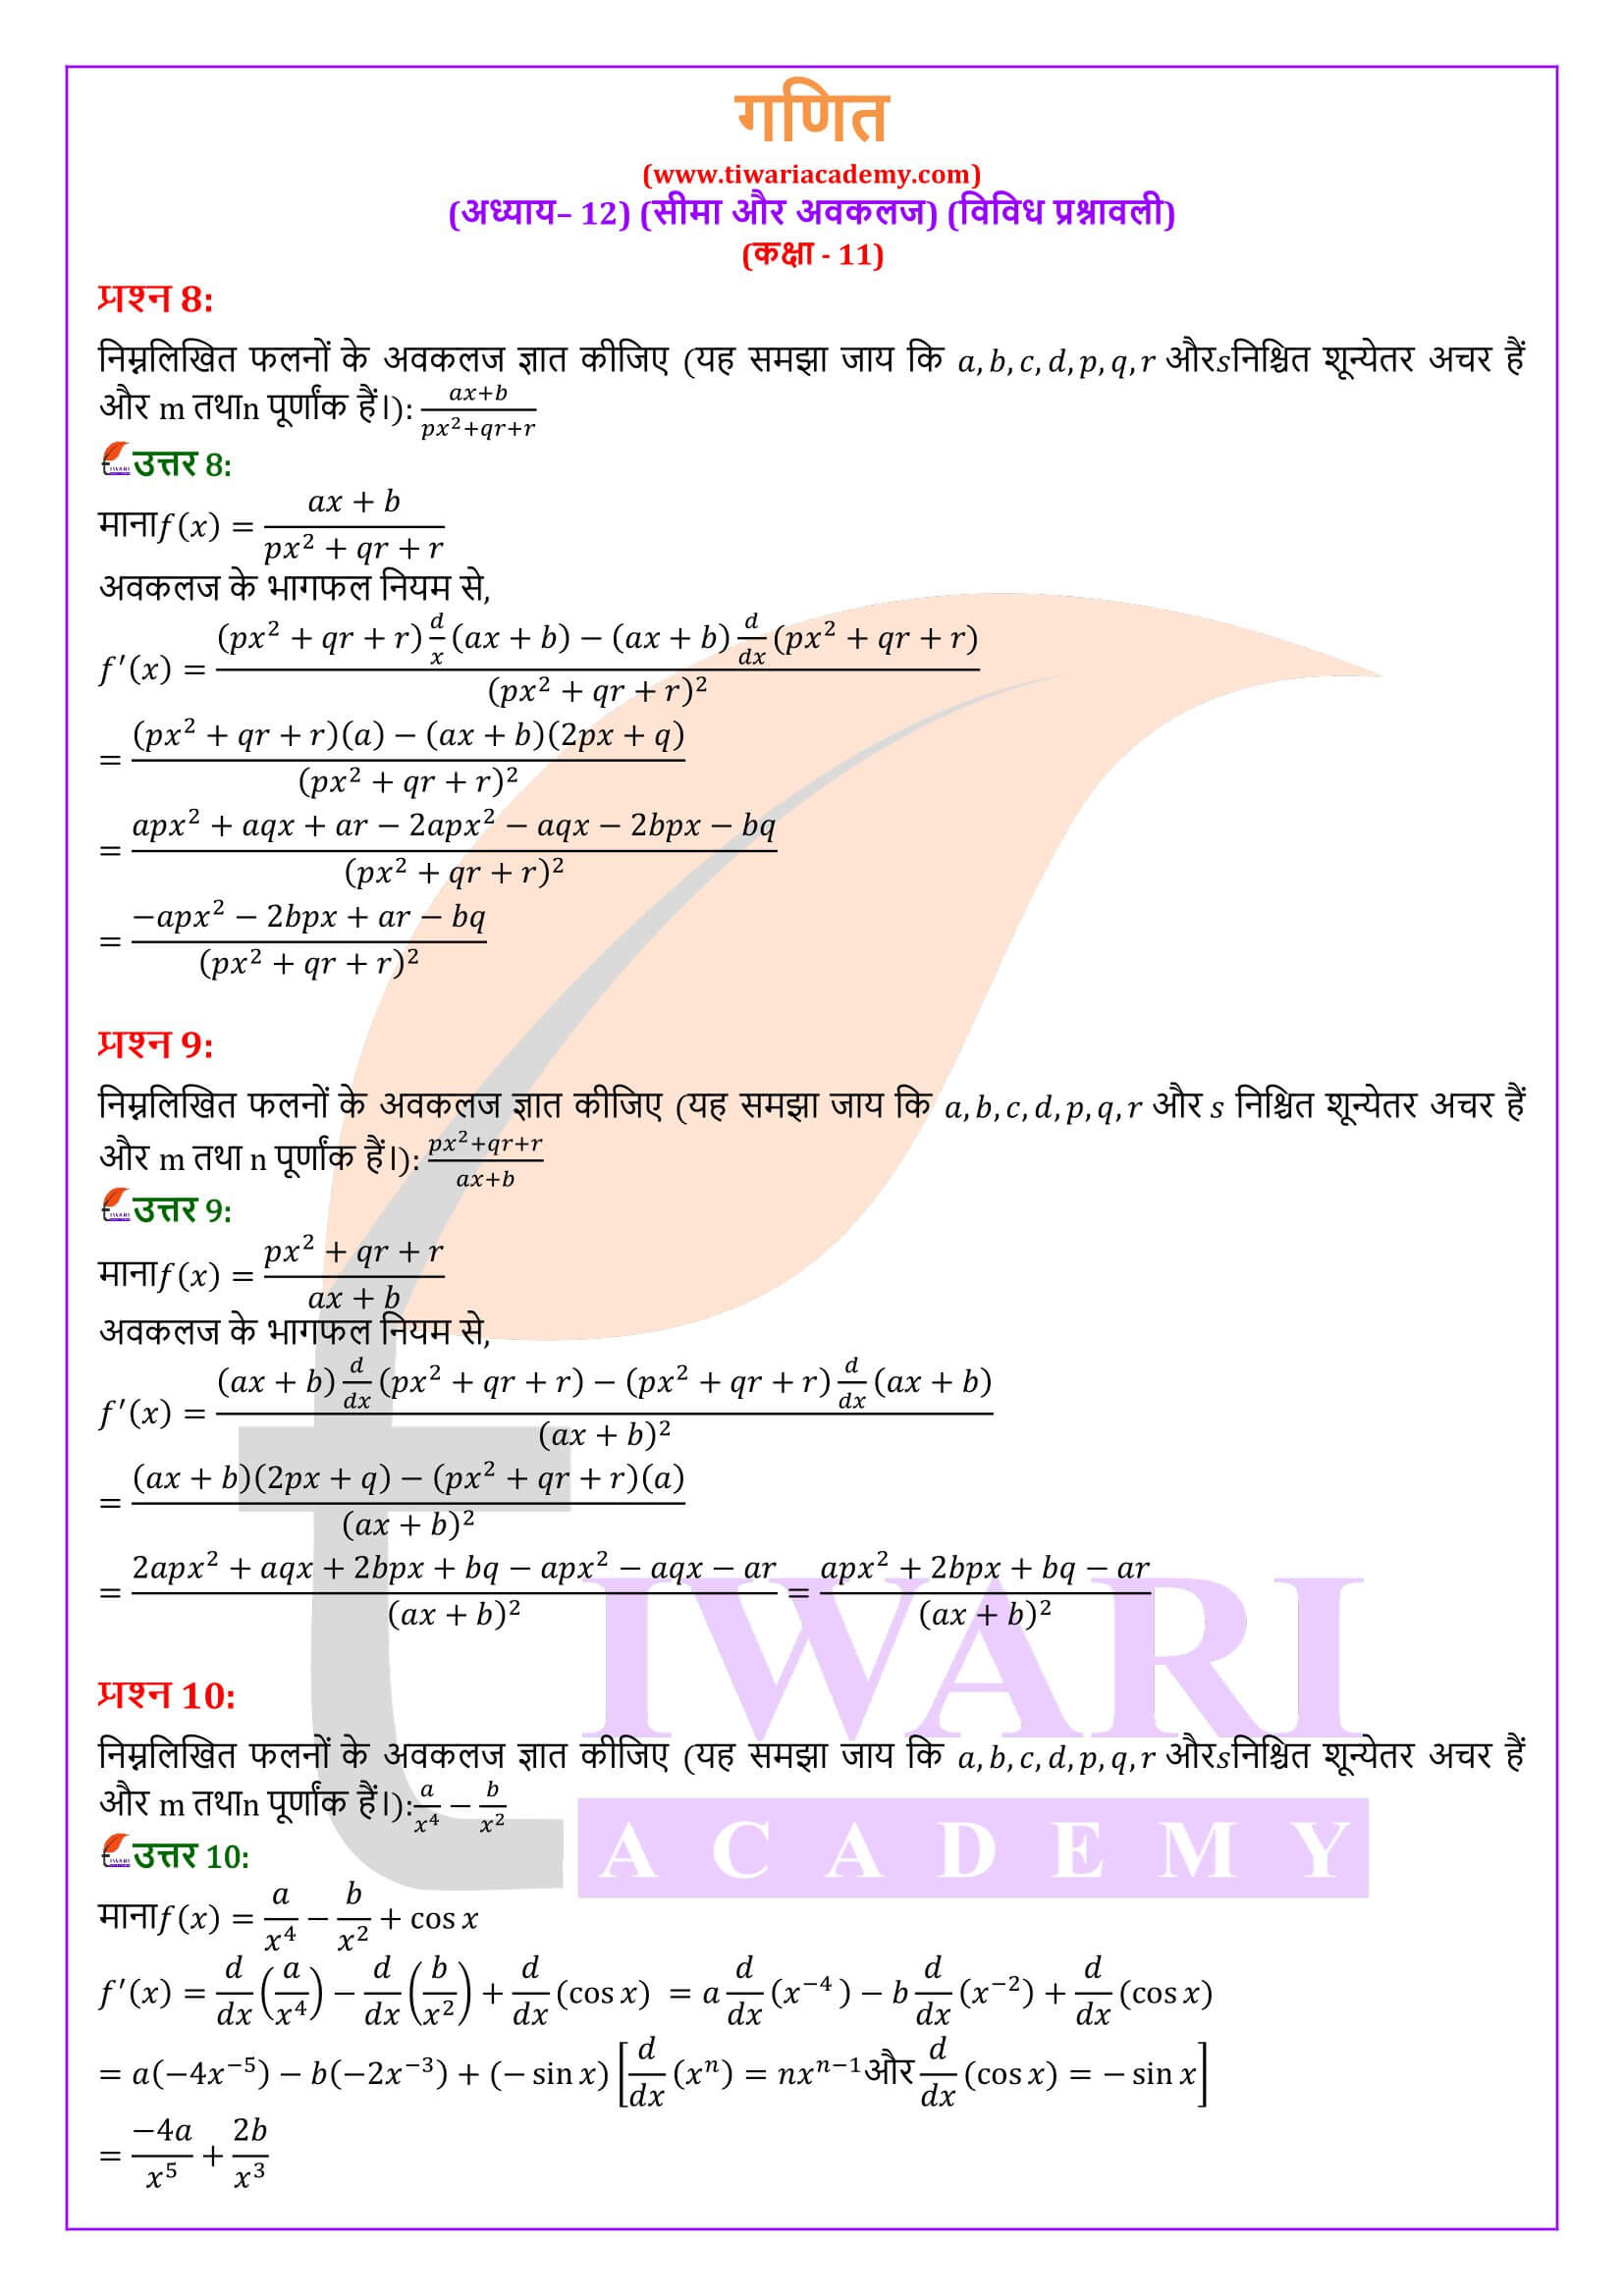 एनसीईआरटी समाधान कक्षा 11 गणित अध्याय 12 विविध प्रश्नावली हिंदी मीडियम